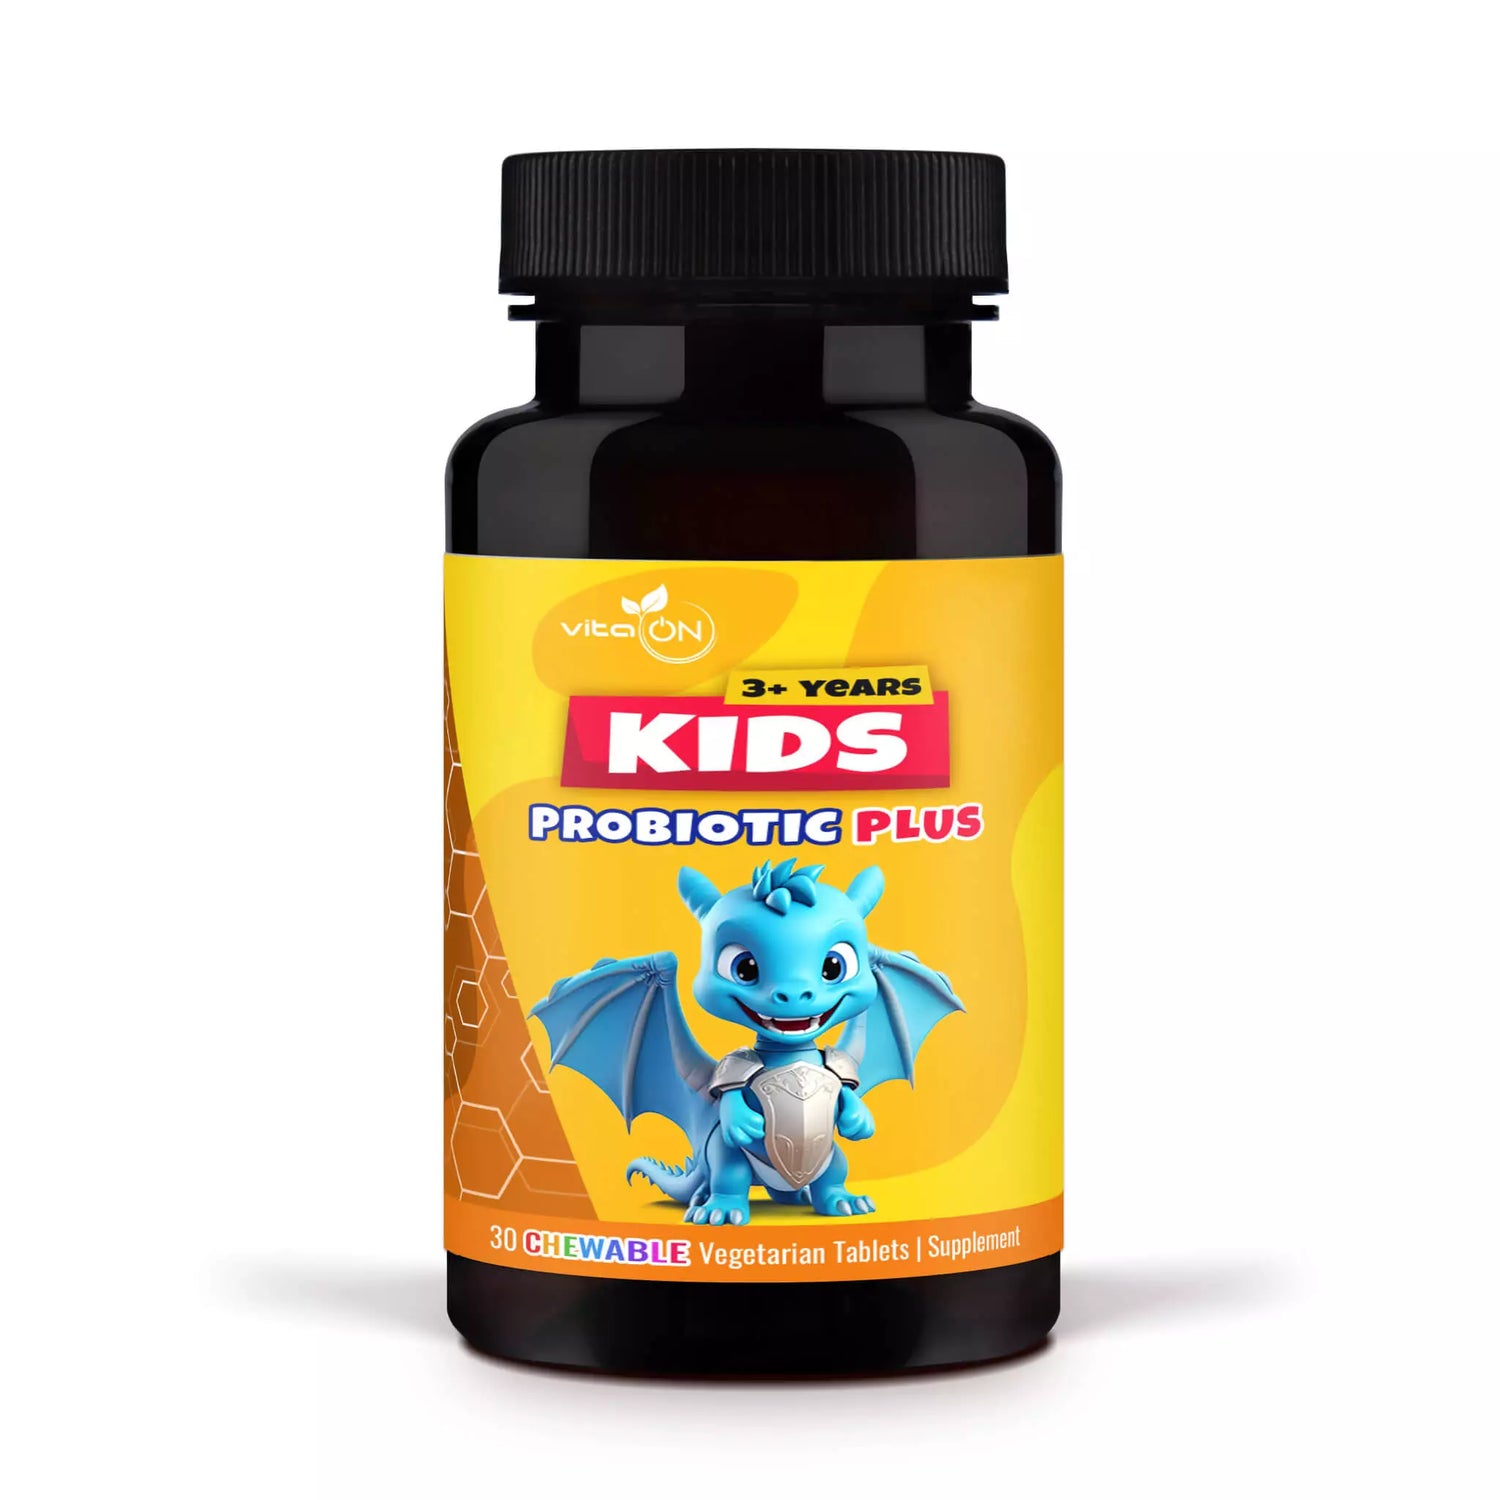 Dostarcza pożytecznych bakterii dla ogólnego stanu zdrowia Twojego dziecka.